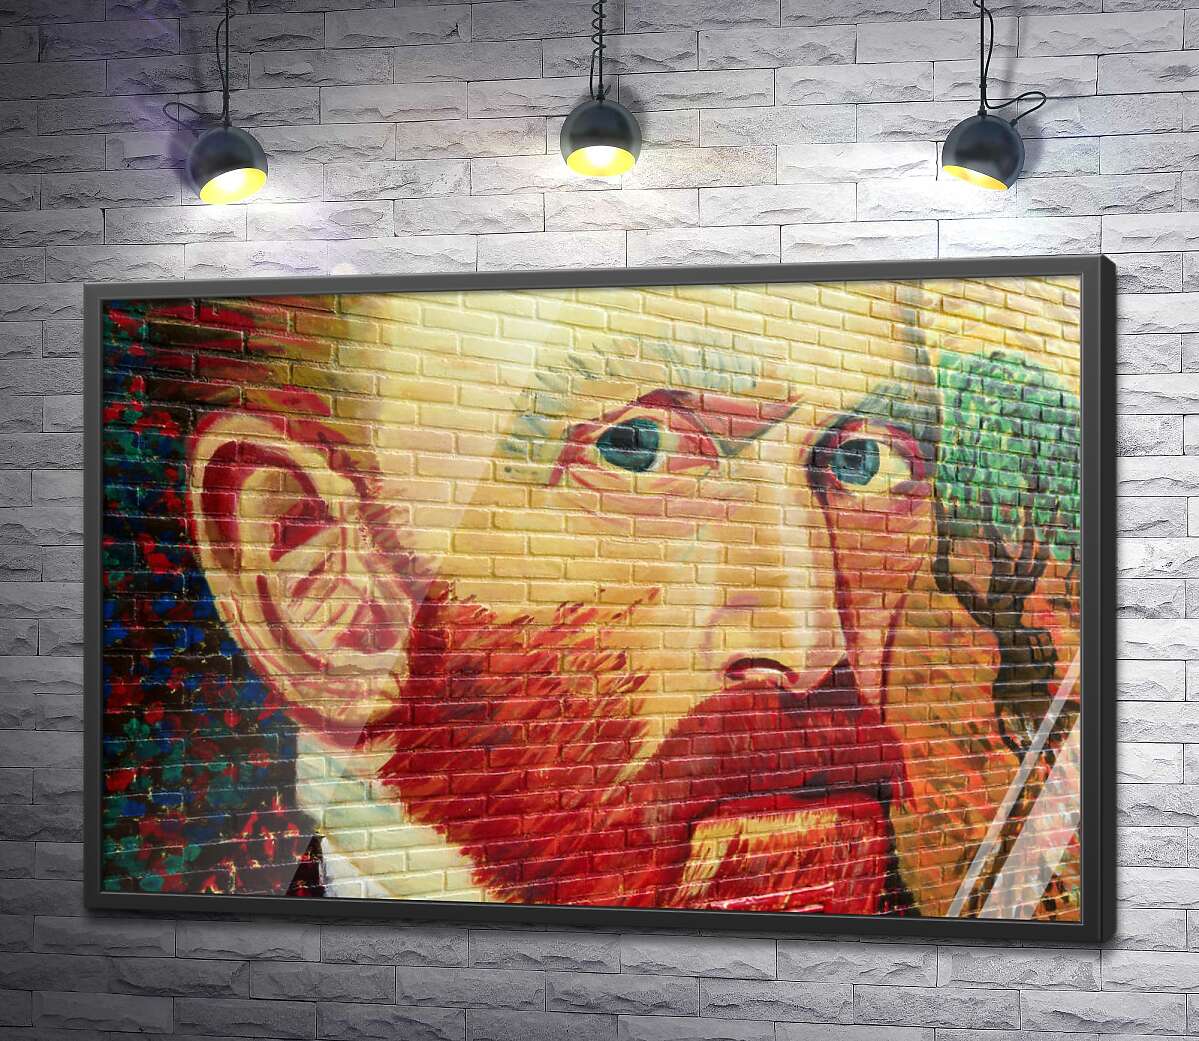 постер Портрет Винсента Ван Гога сверкает красками на стене